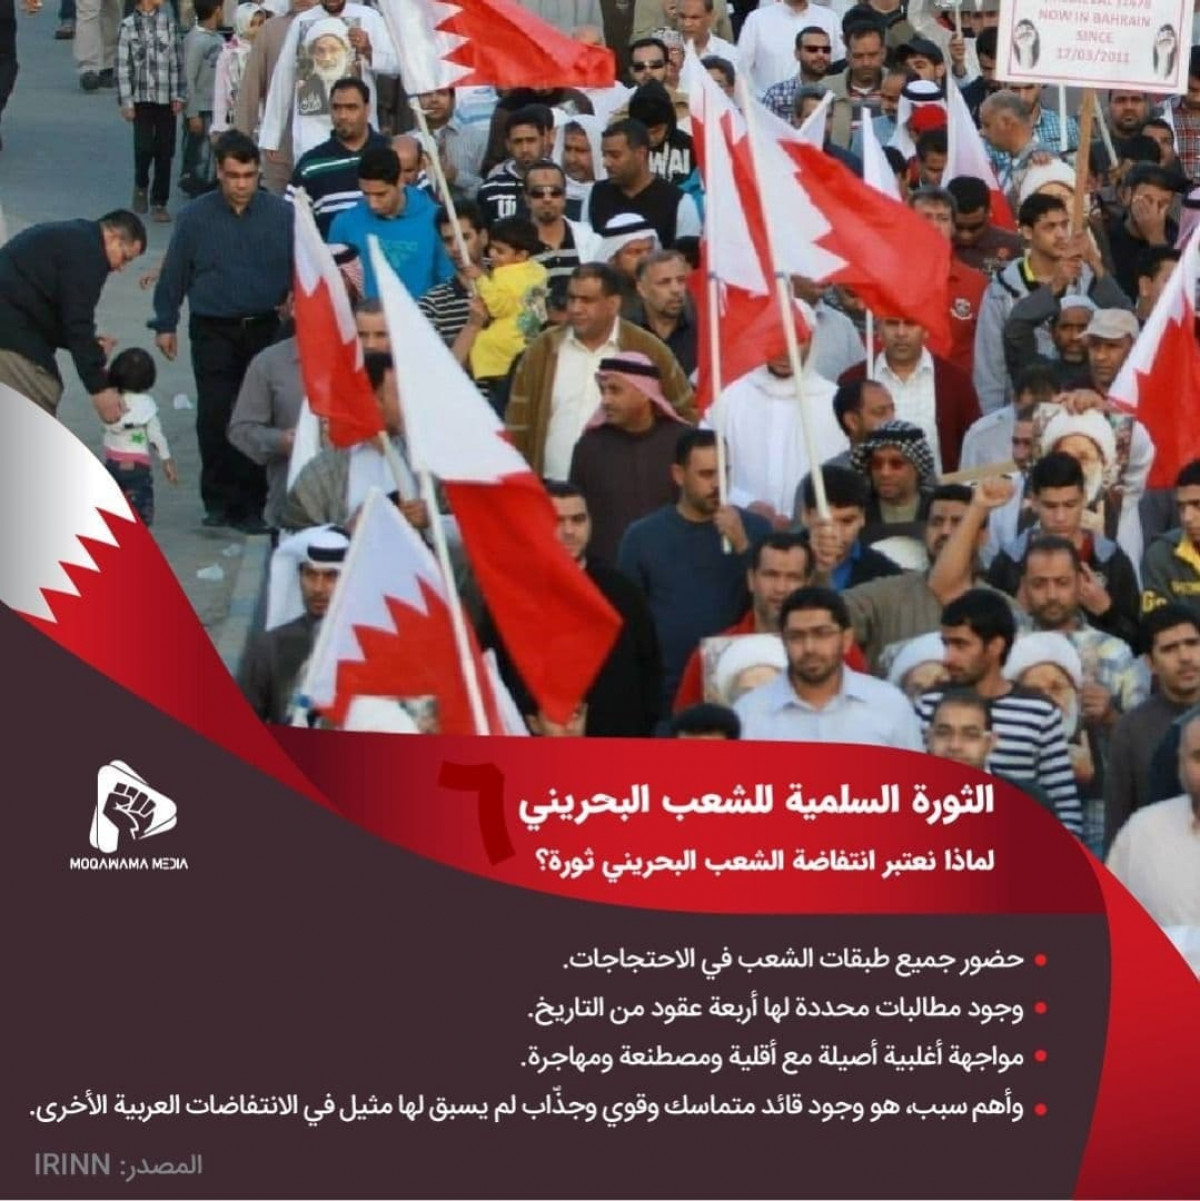 الثورة السلمية للشعب البحريني / لماذا نعتبر انتفاضة الشعب البحريني ثورة؟